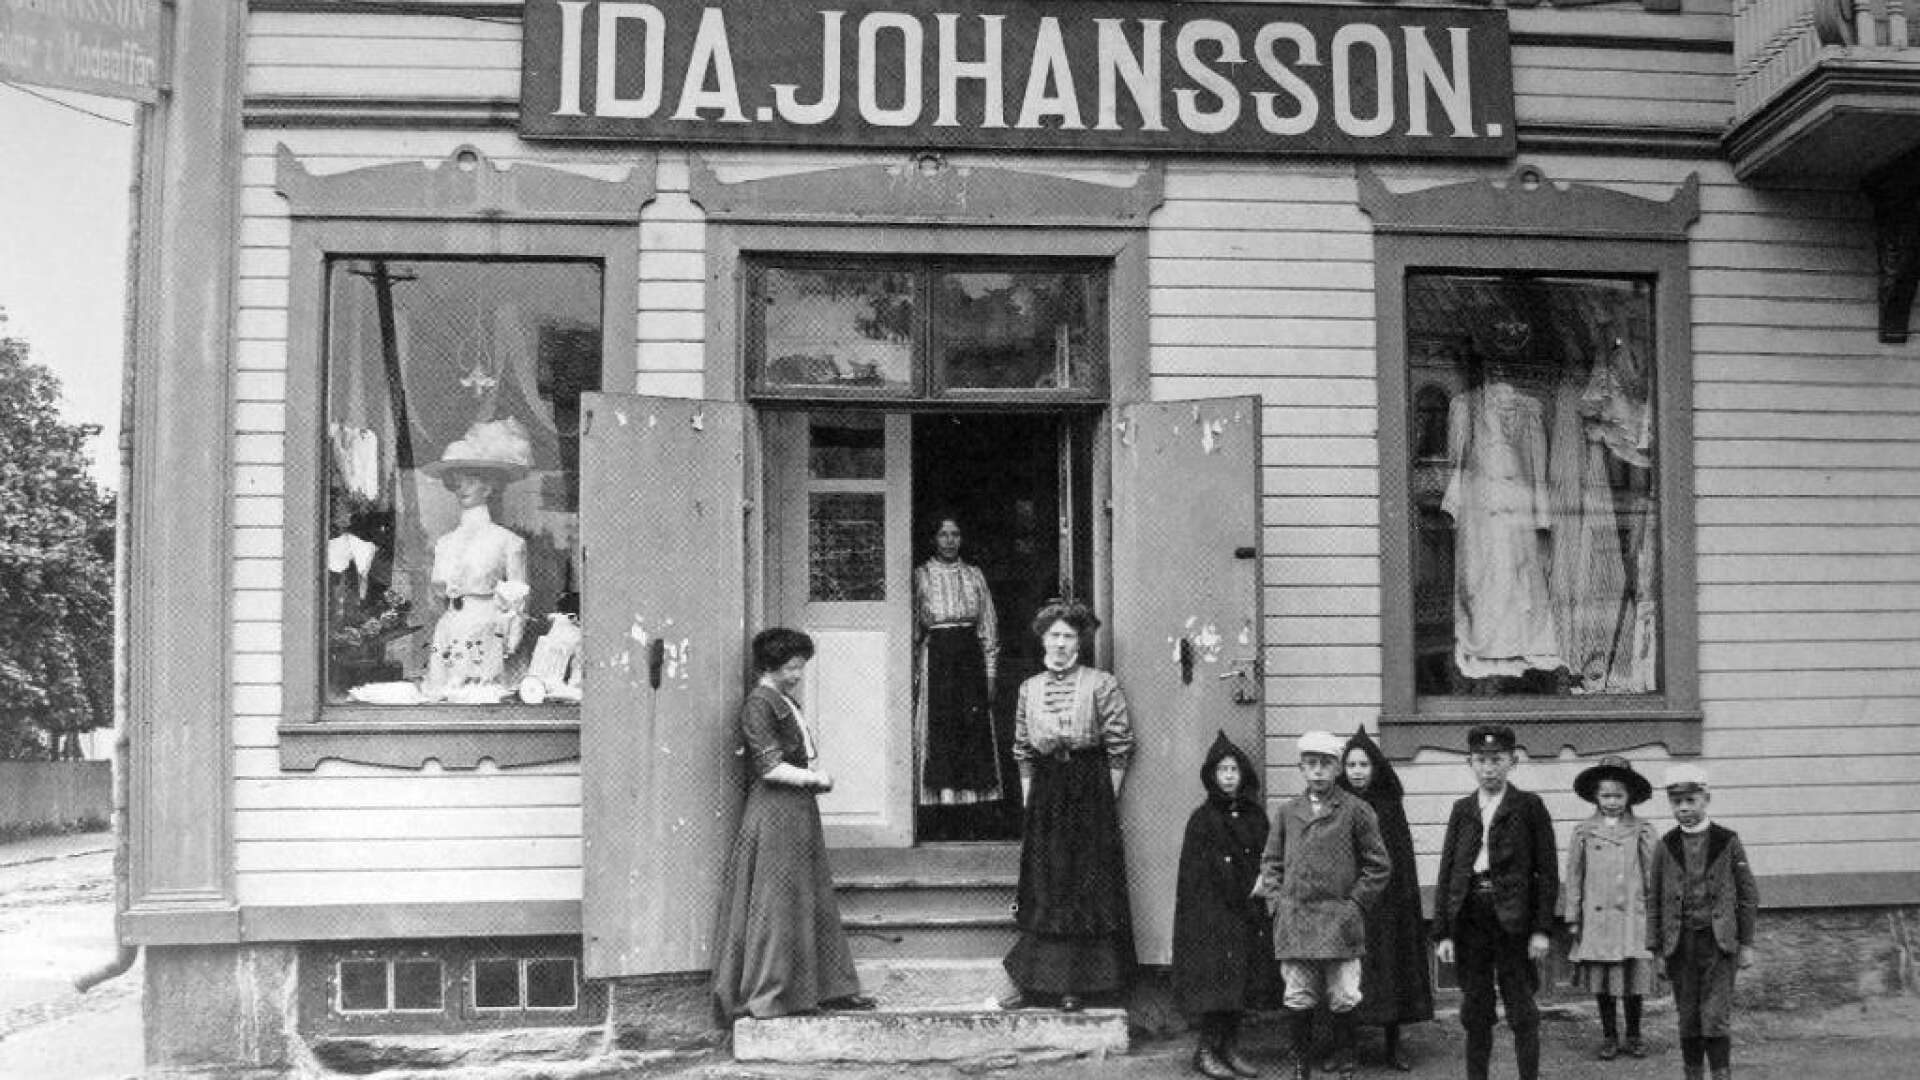 I Envallshuset drev Ida Johansson i ett halvt sekel sin manufaktur- och modeaffär. Han var i 85-årsåldern när hon överlät sin rörelse.